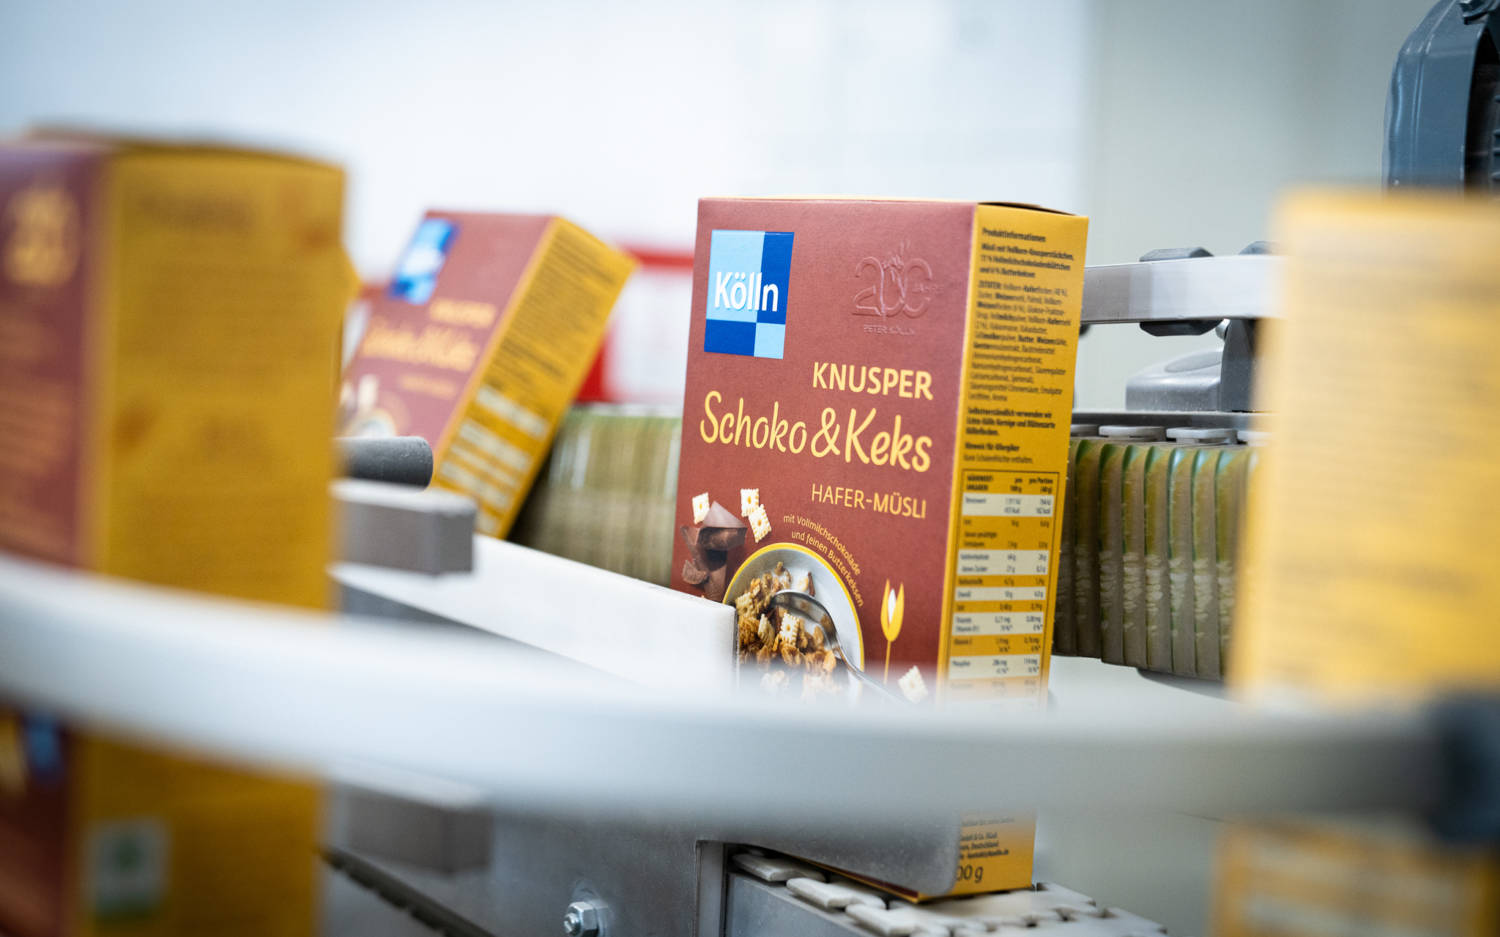 Produkte aus dem Hause Kölln landen in ganz Deutschland in Supermarktregalen / ©Kölln